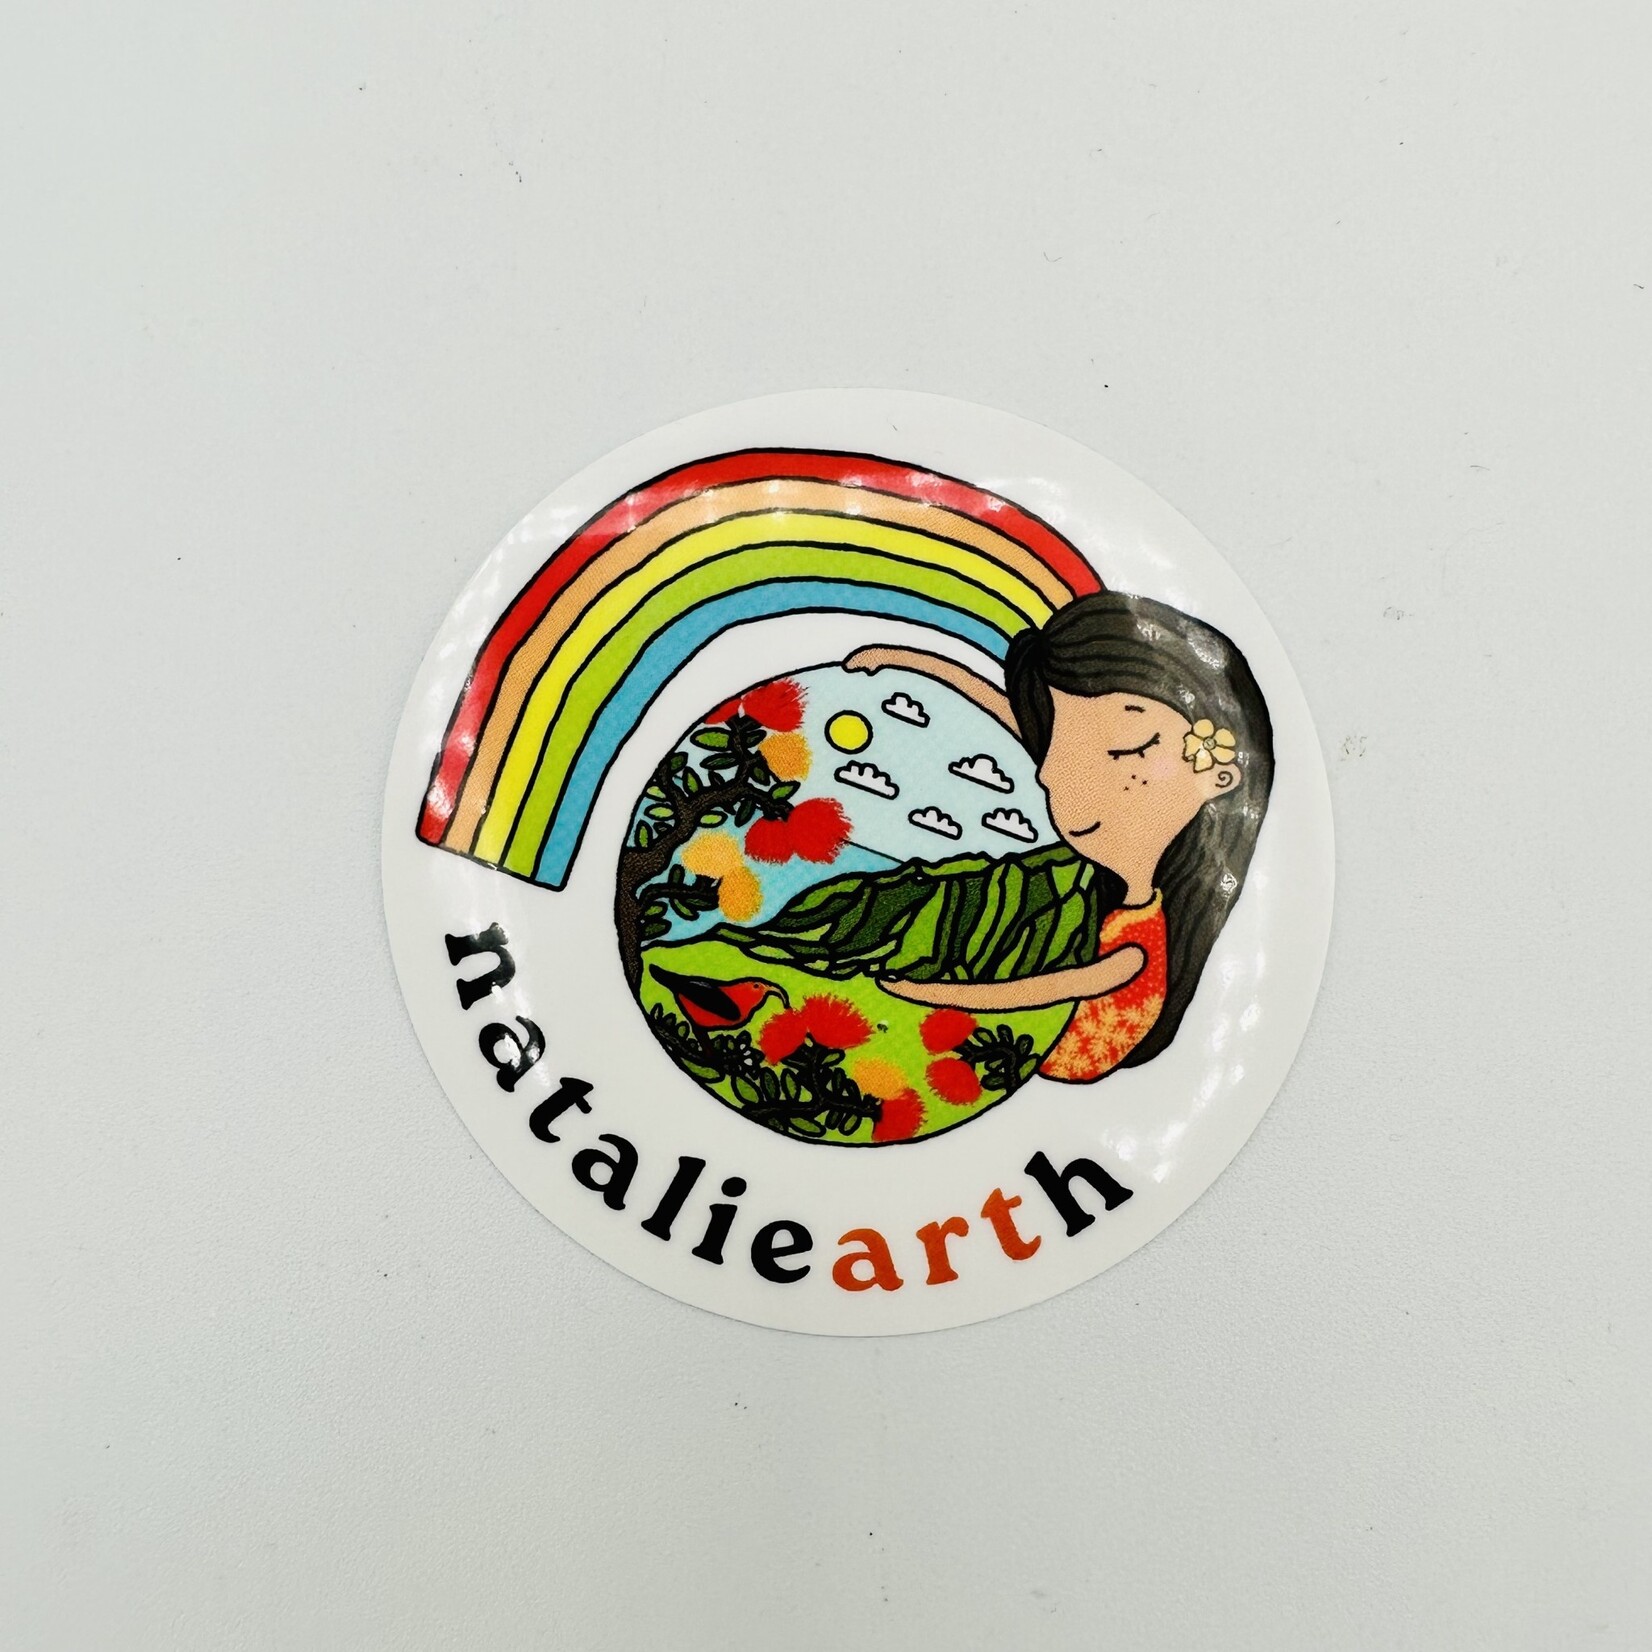 Natalie Earth LLC Nataliearth Sticker 2.5” x 2.5”